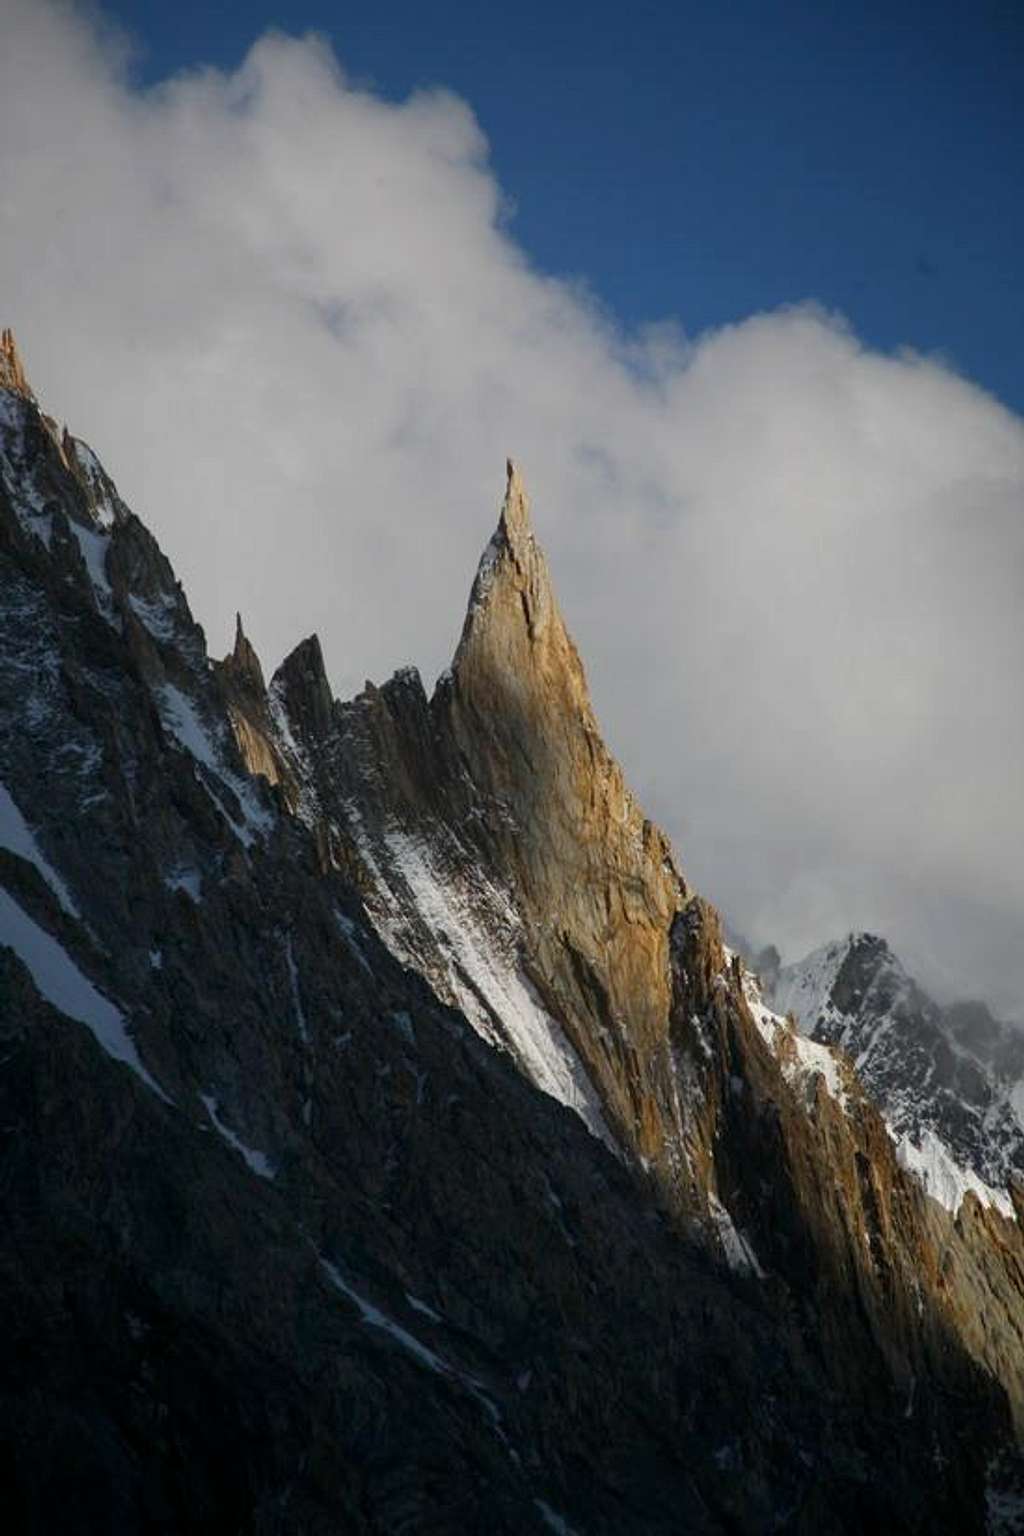 Un-named Sharp Peaks, Near Concordia, Baltoro Glacier, Karakoram, Pakistan